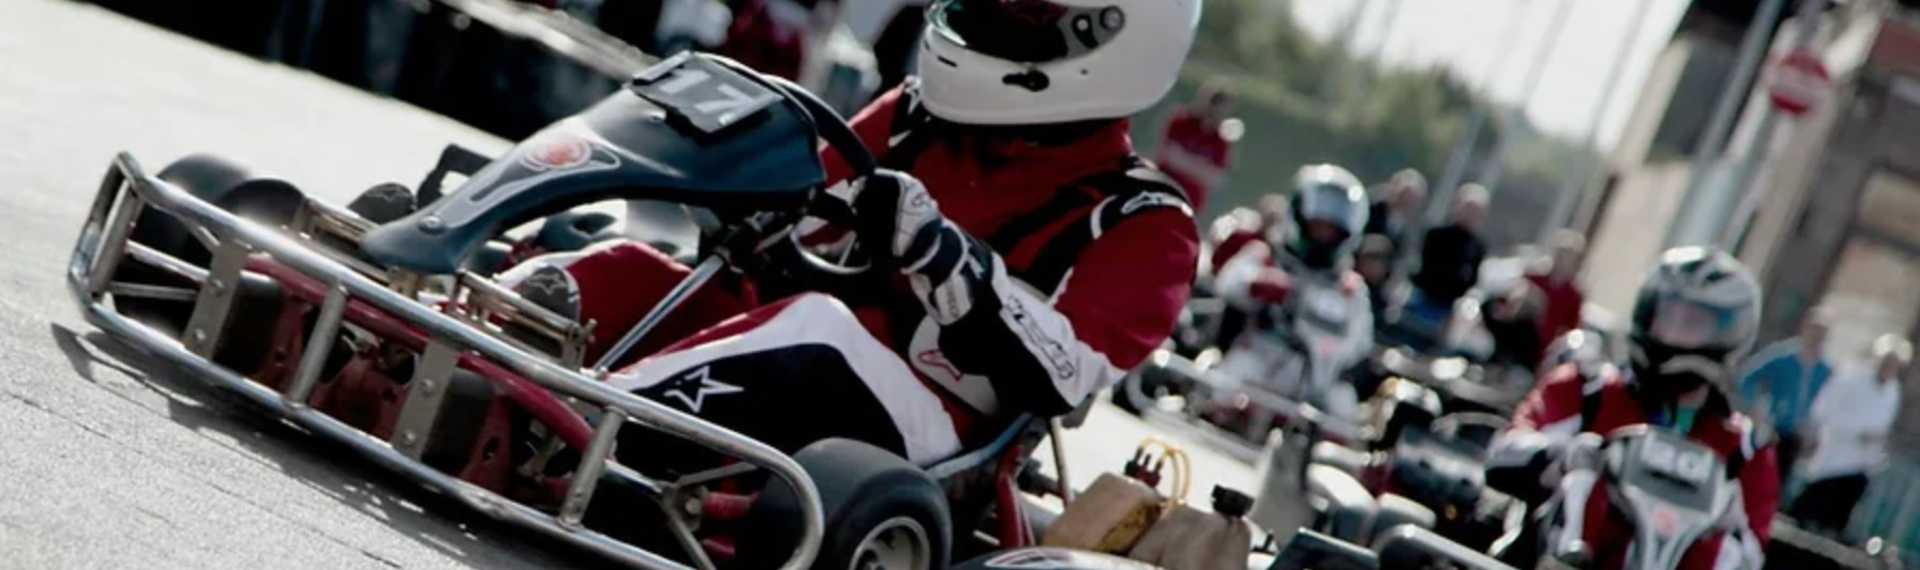 Karting extérieur à Bordeaux - Devis rapide pour votre EVG